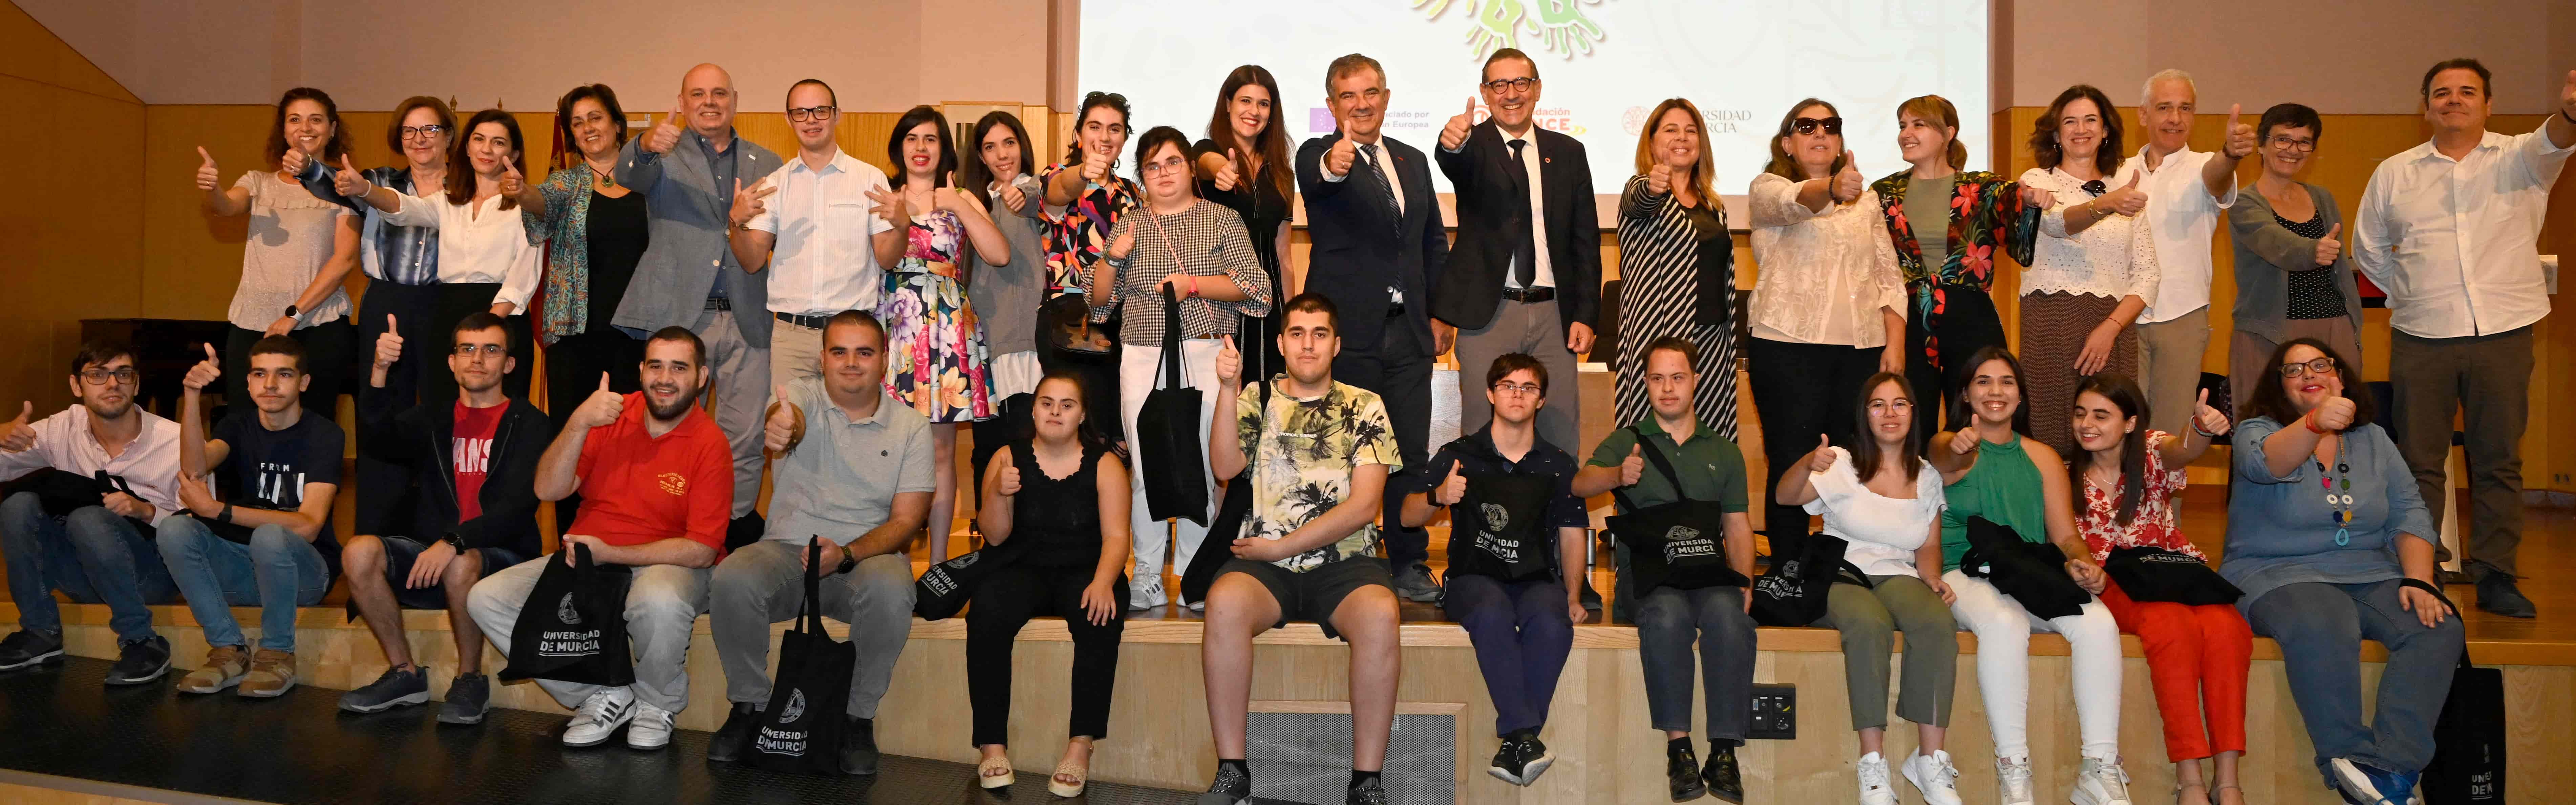 La Universidad de Murcia inaugura la VII edición del programa de inclusión ‘Todos Somos Campus’